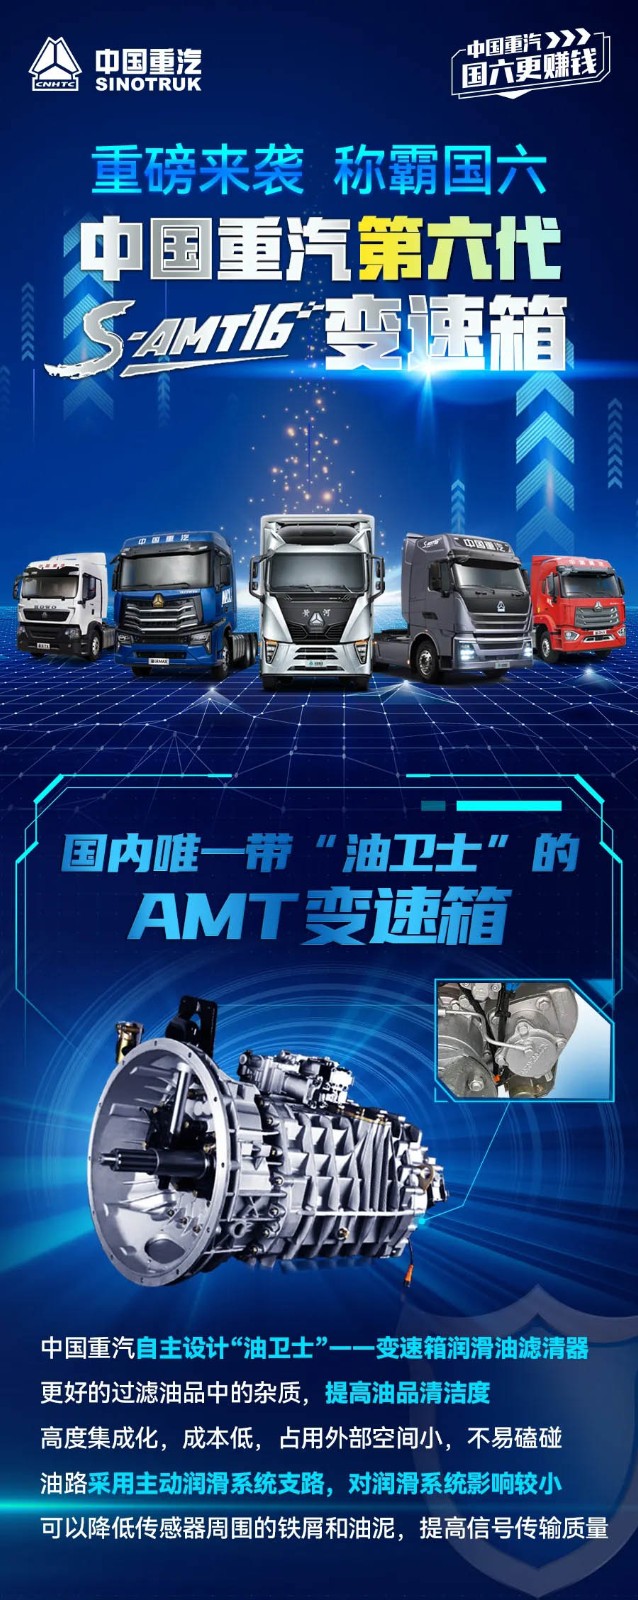 中国重汽第六代S-AMT16变速箱11.jpg